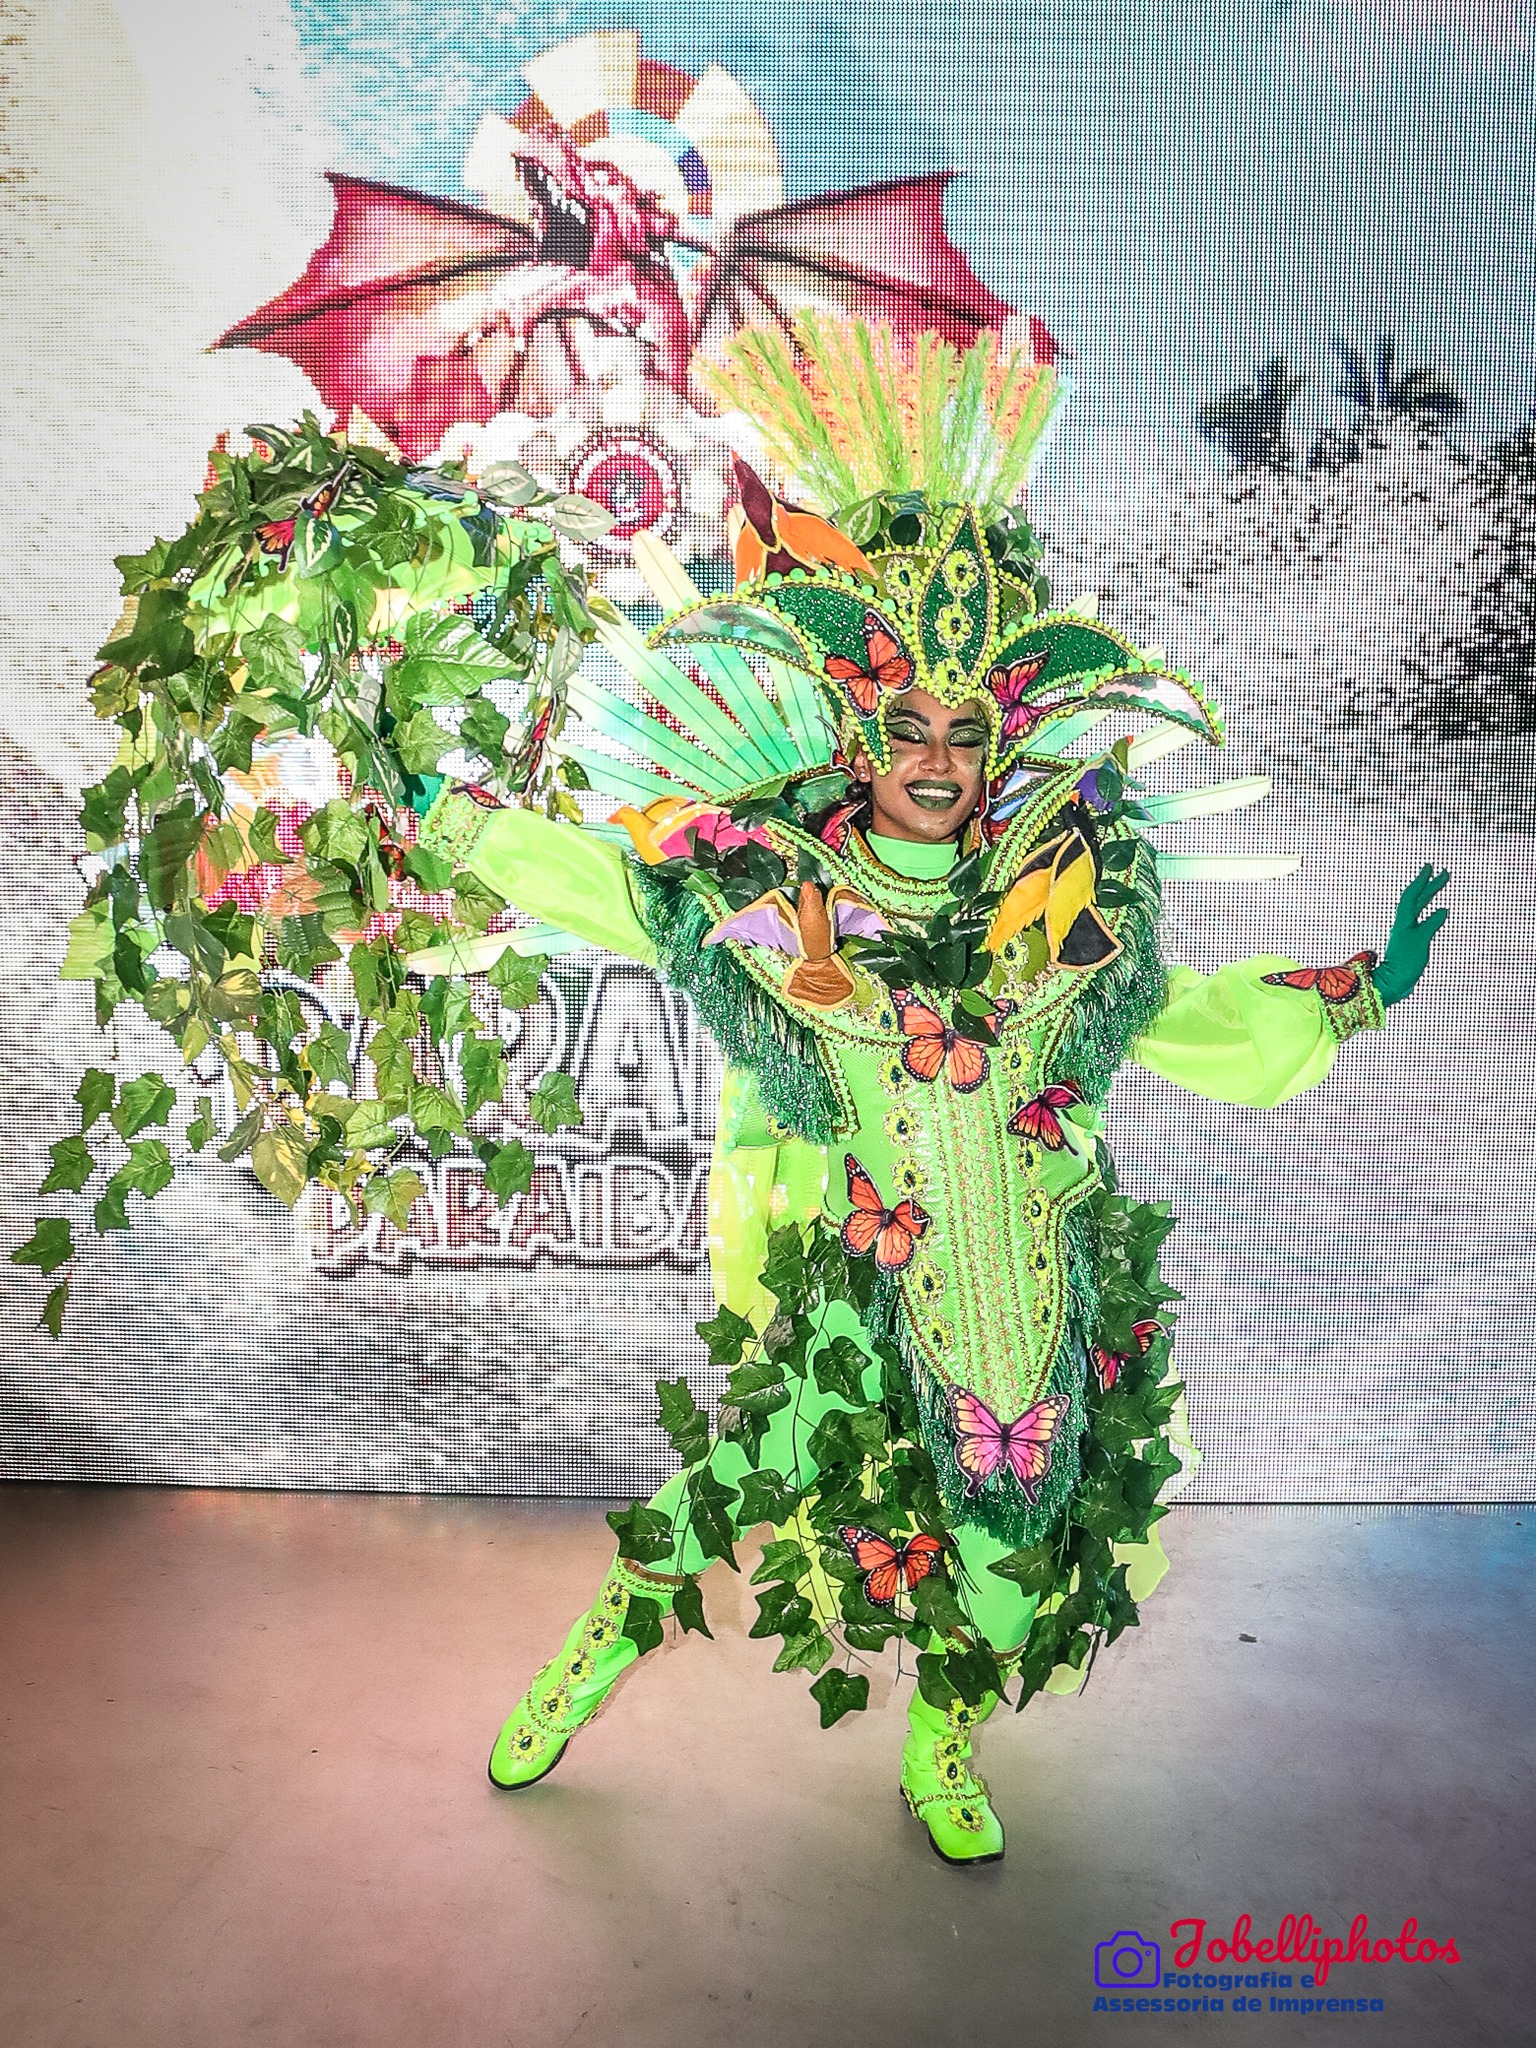 Fantasia da Dragões da Real para o Carnaval 2023. Foto: João Belli